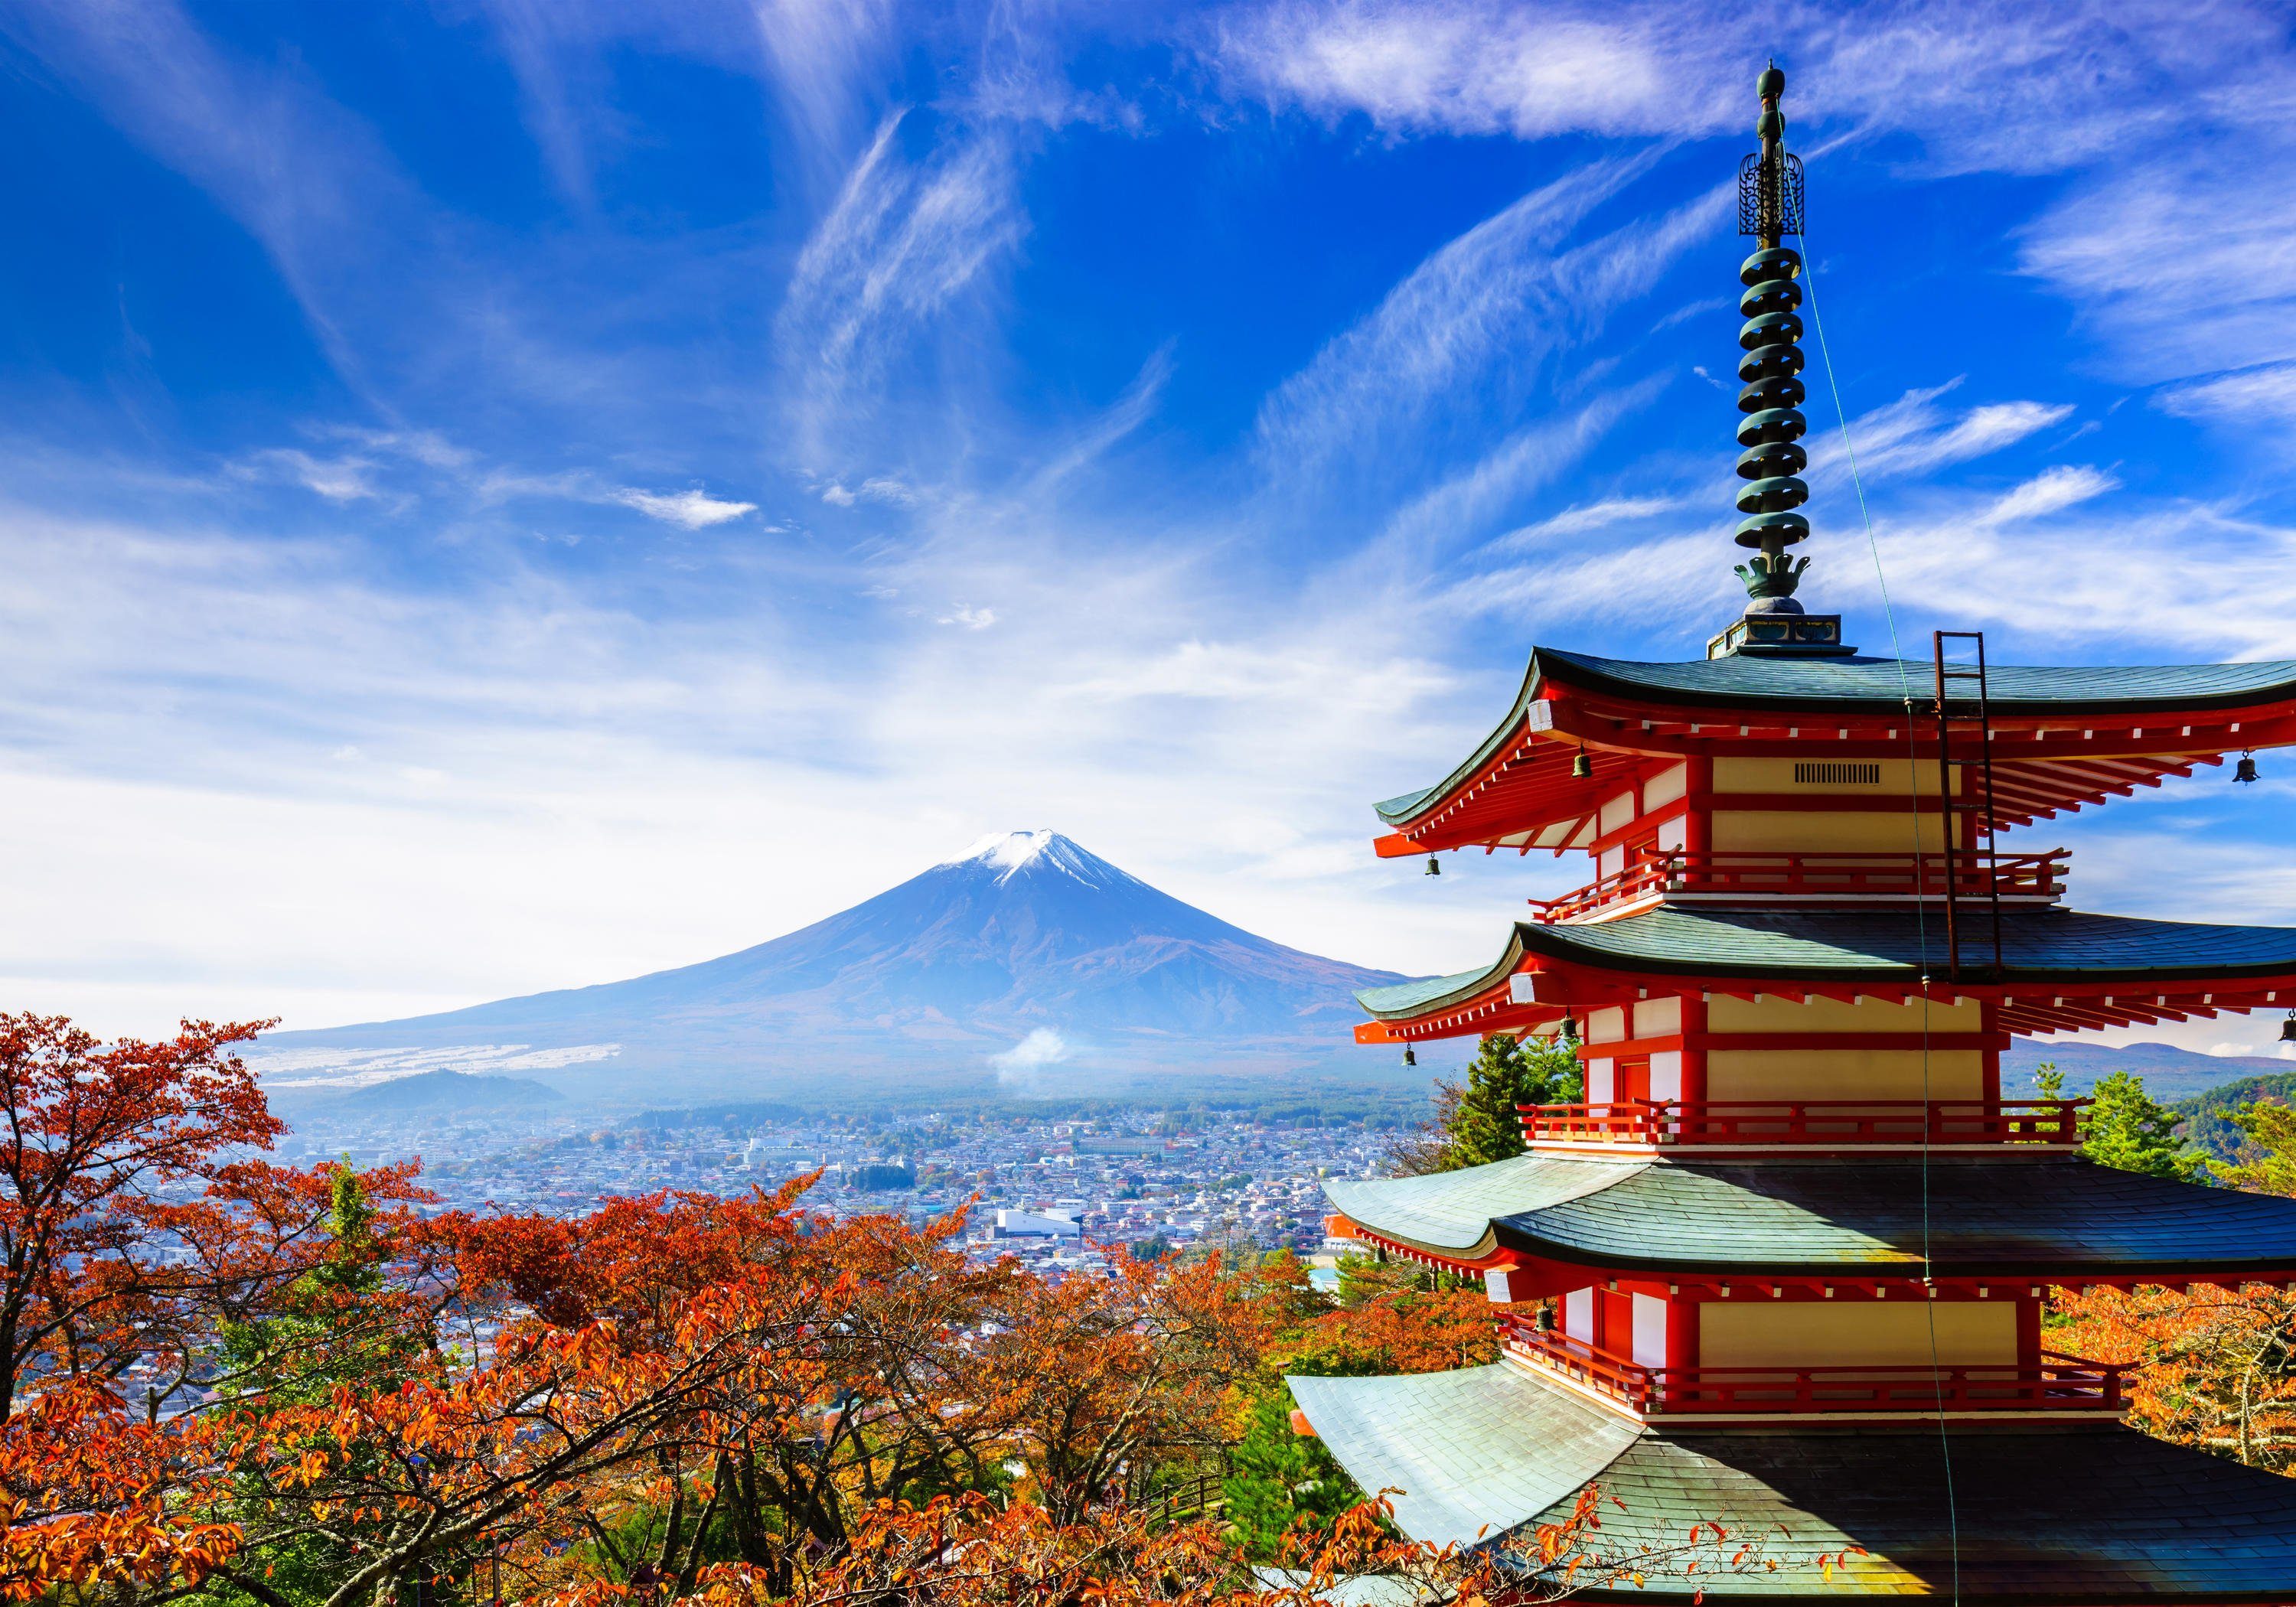 Mount Vliestapete Motivtapete, Wandtapete, glatt, matt, wandmotiv24 Fototapete Pagoda, Fuji-Chureito